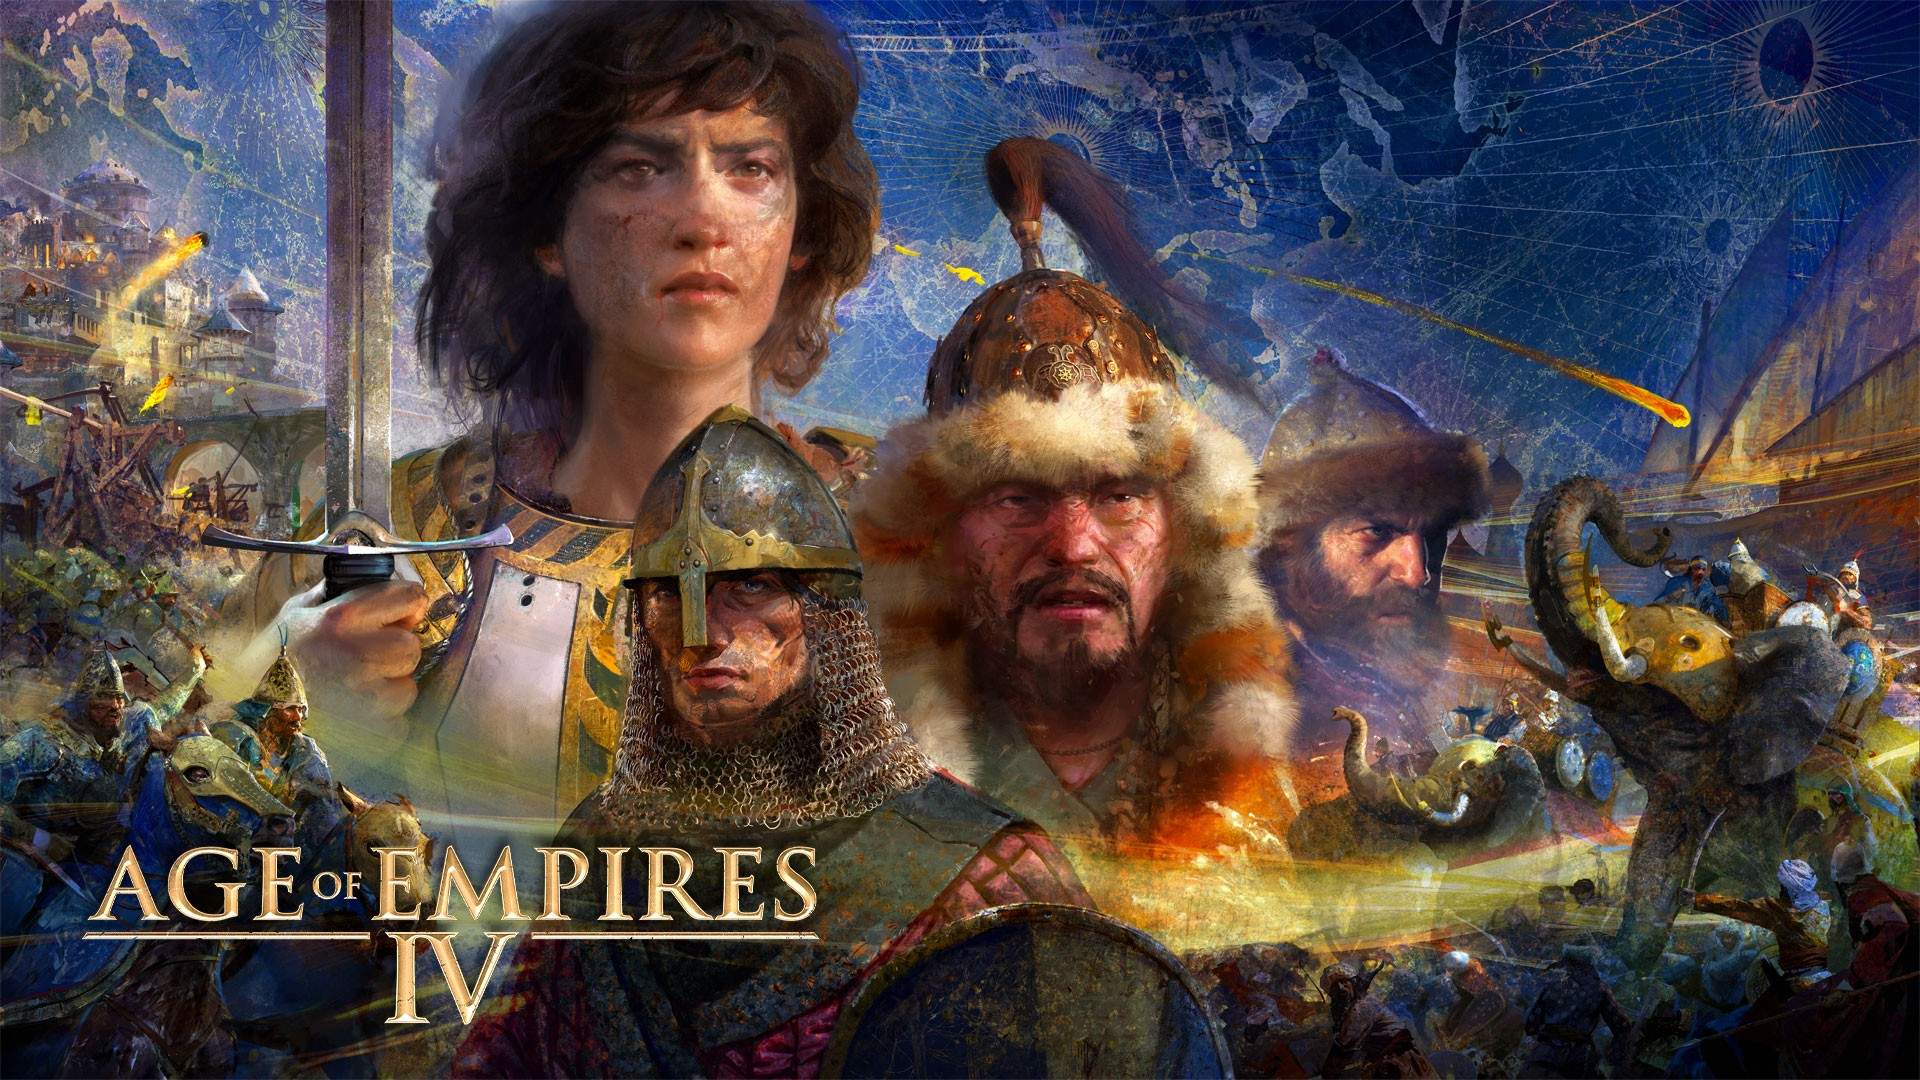 8 jogos estilo Age of Empires para quem gosta de estratégia - Liga dos Games